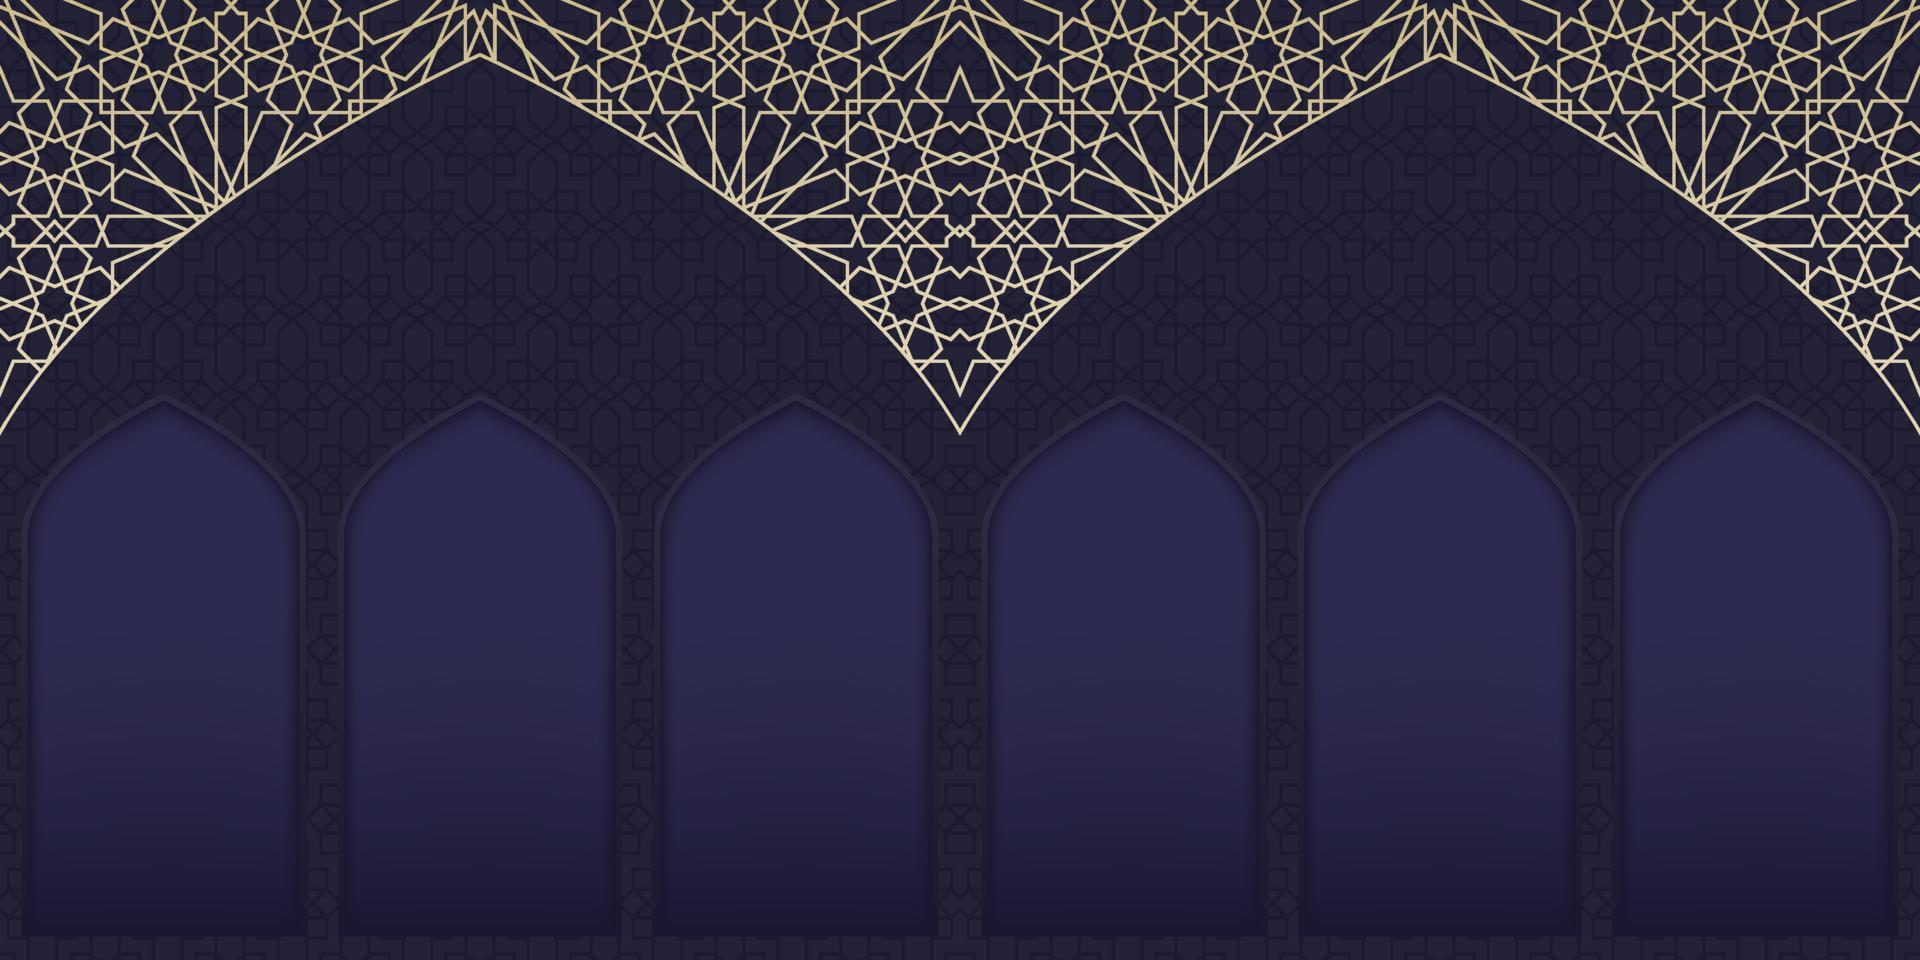 fond de ramadan kareem. fond islamique avec motif arabesque et mosquée de fenêtre. fond eid mubarak. illustration vectorielle islamique vecteur